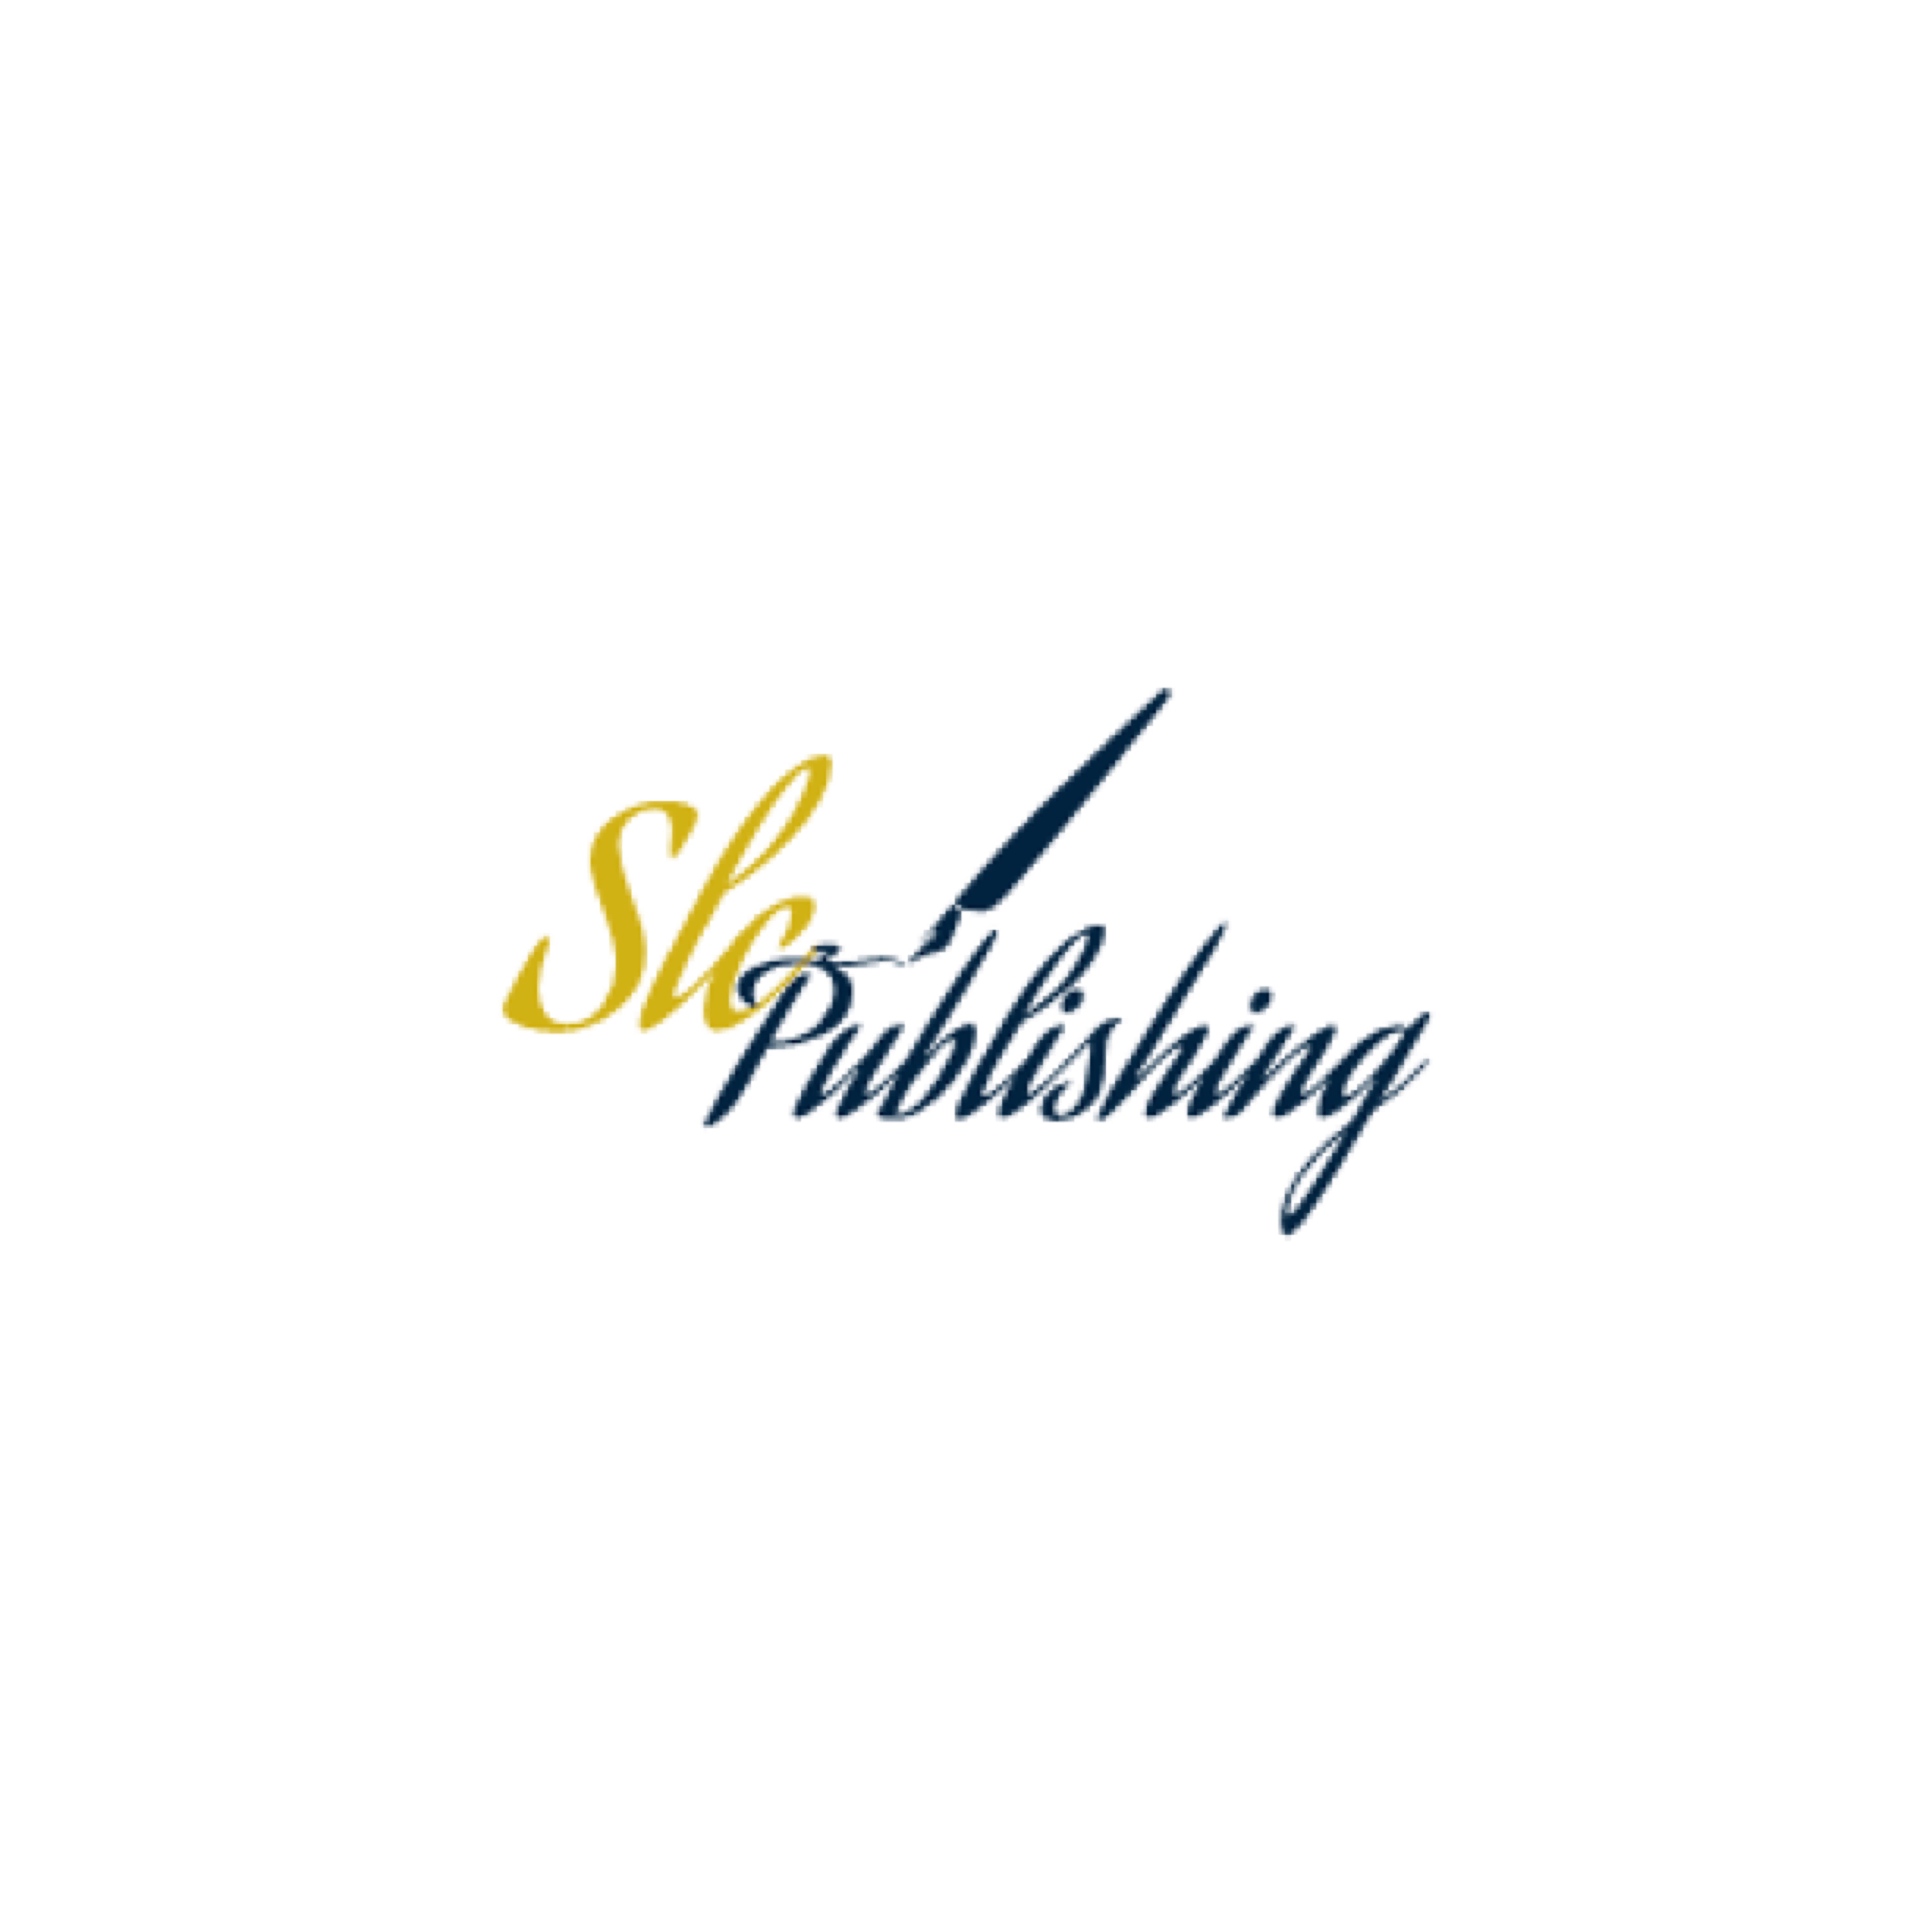 SLC Publishing